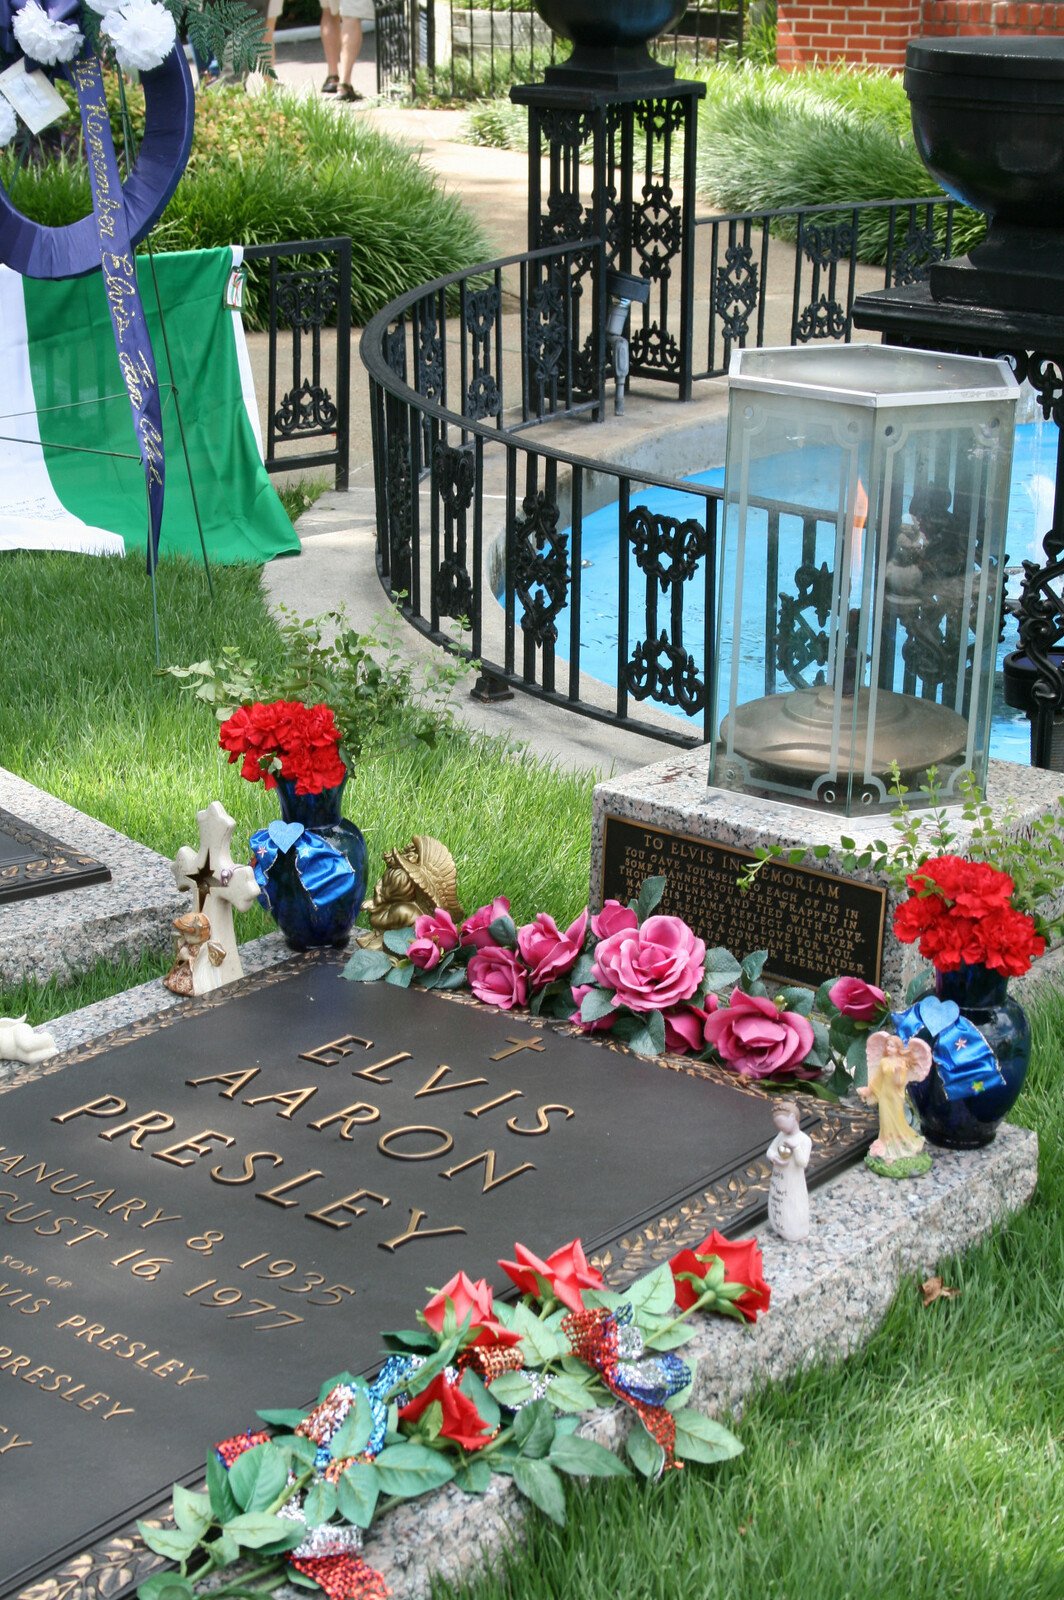 Hroby Elvise Presleyho a rodiny v meditační zahradě Gracelandu.